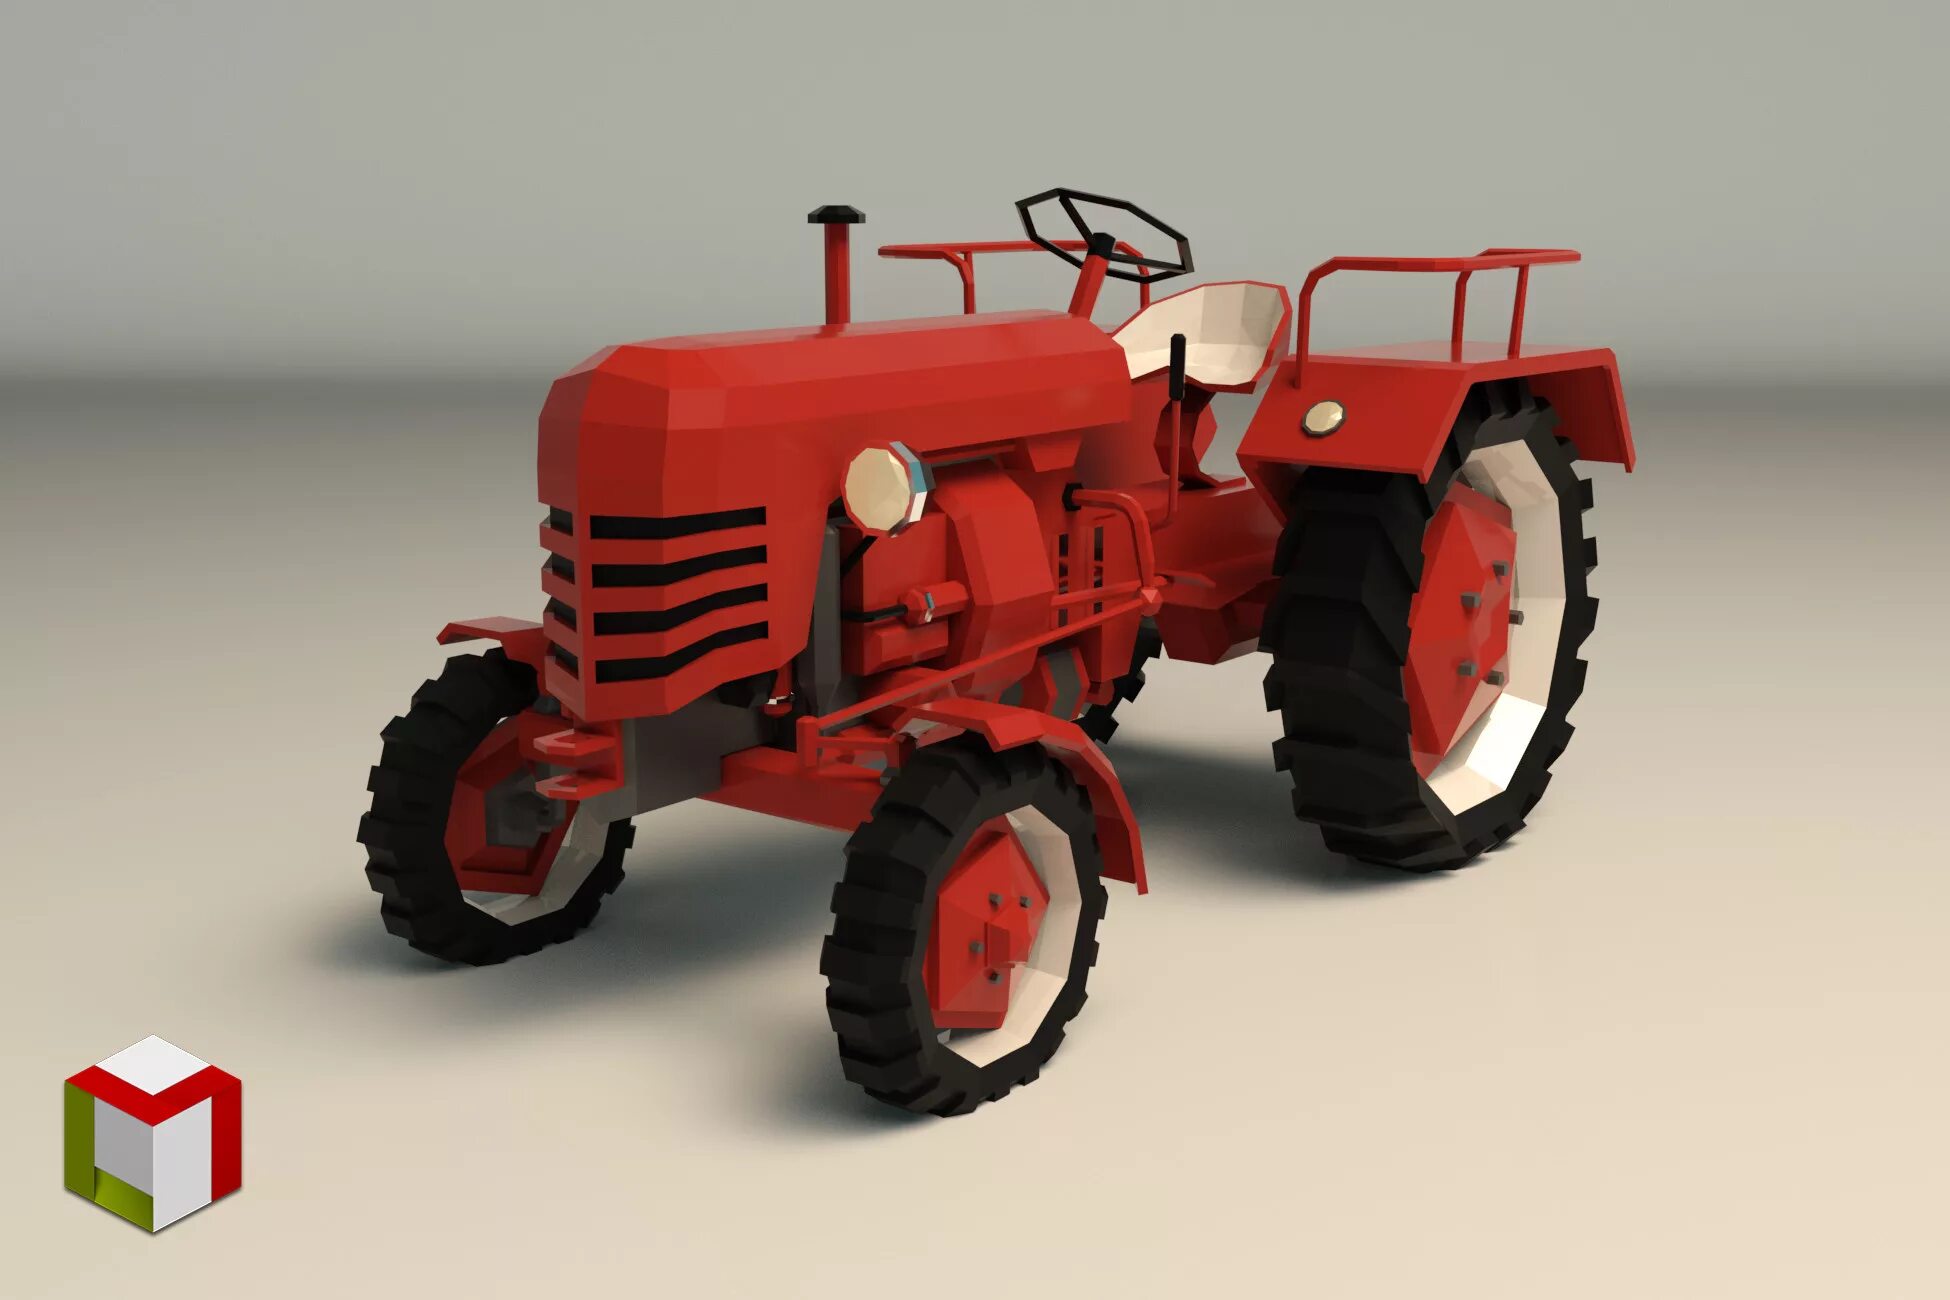 Tractor 3. Трактор 3d Max. Модель трактора 3 d Low Poly. Сатисфектори трактор 3d модель. Модель блендер Low Poly трактор.